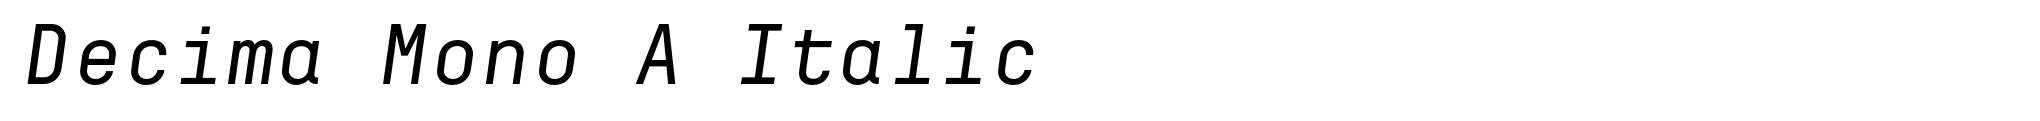 Decima Mono A Italic image